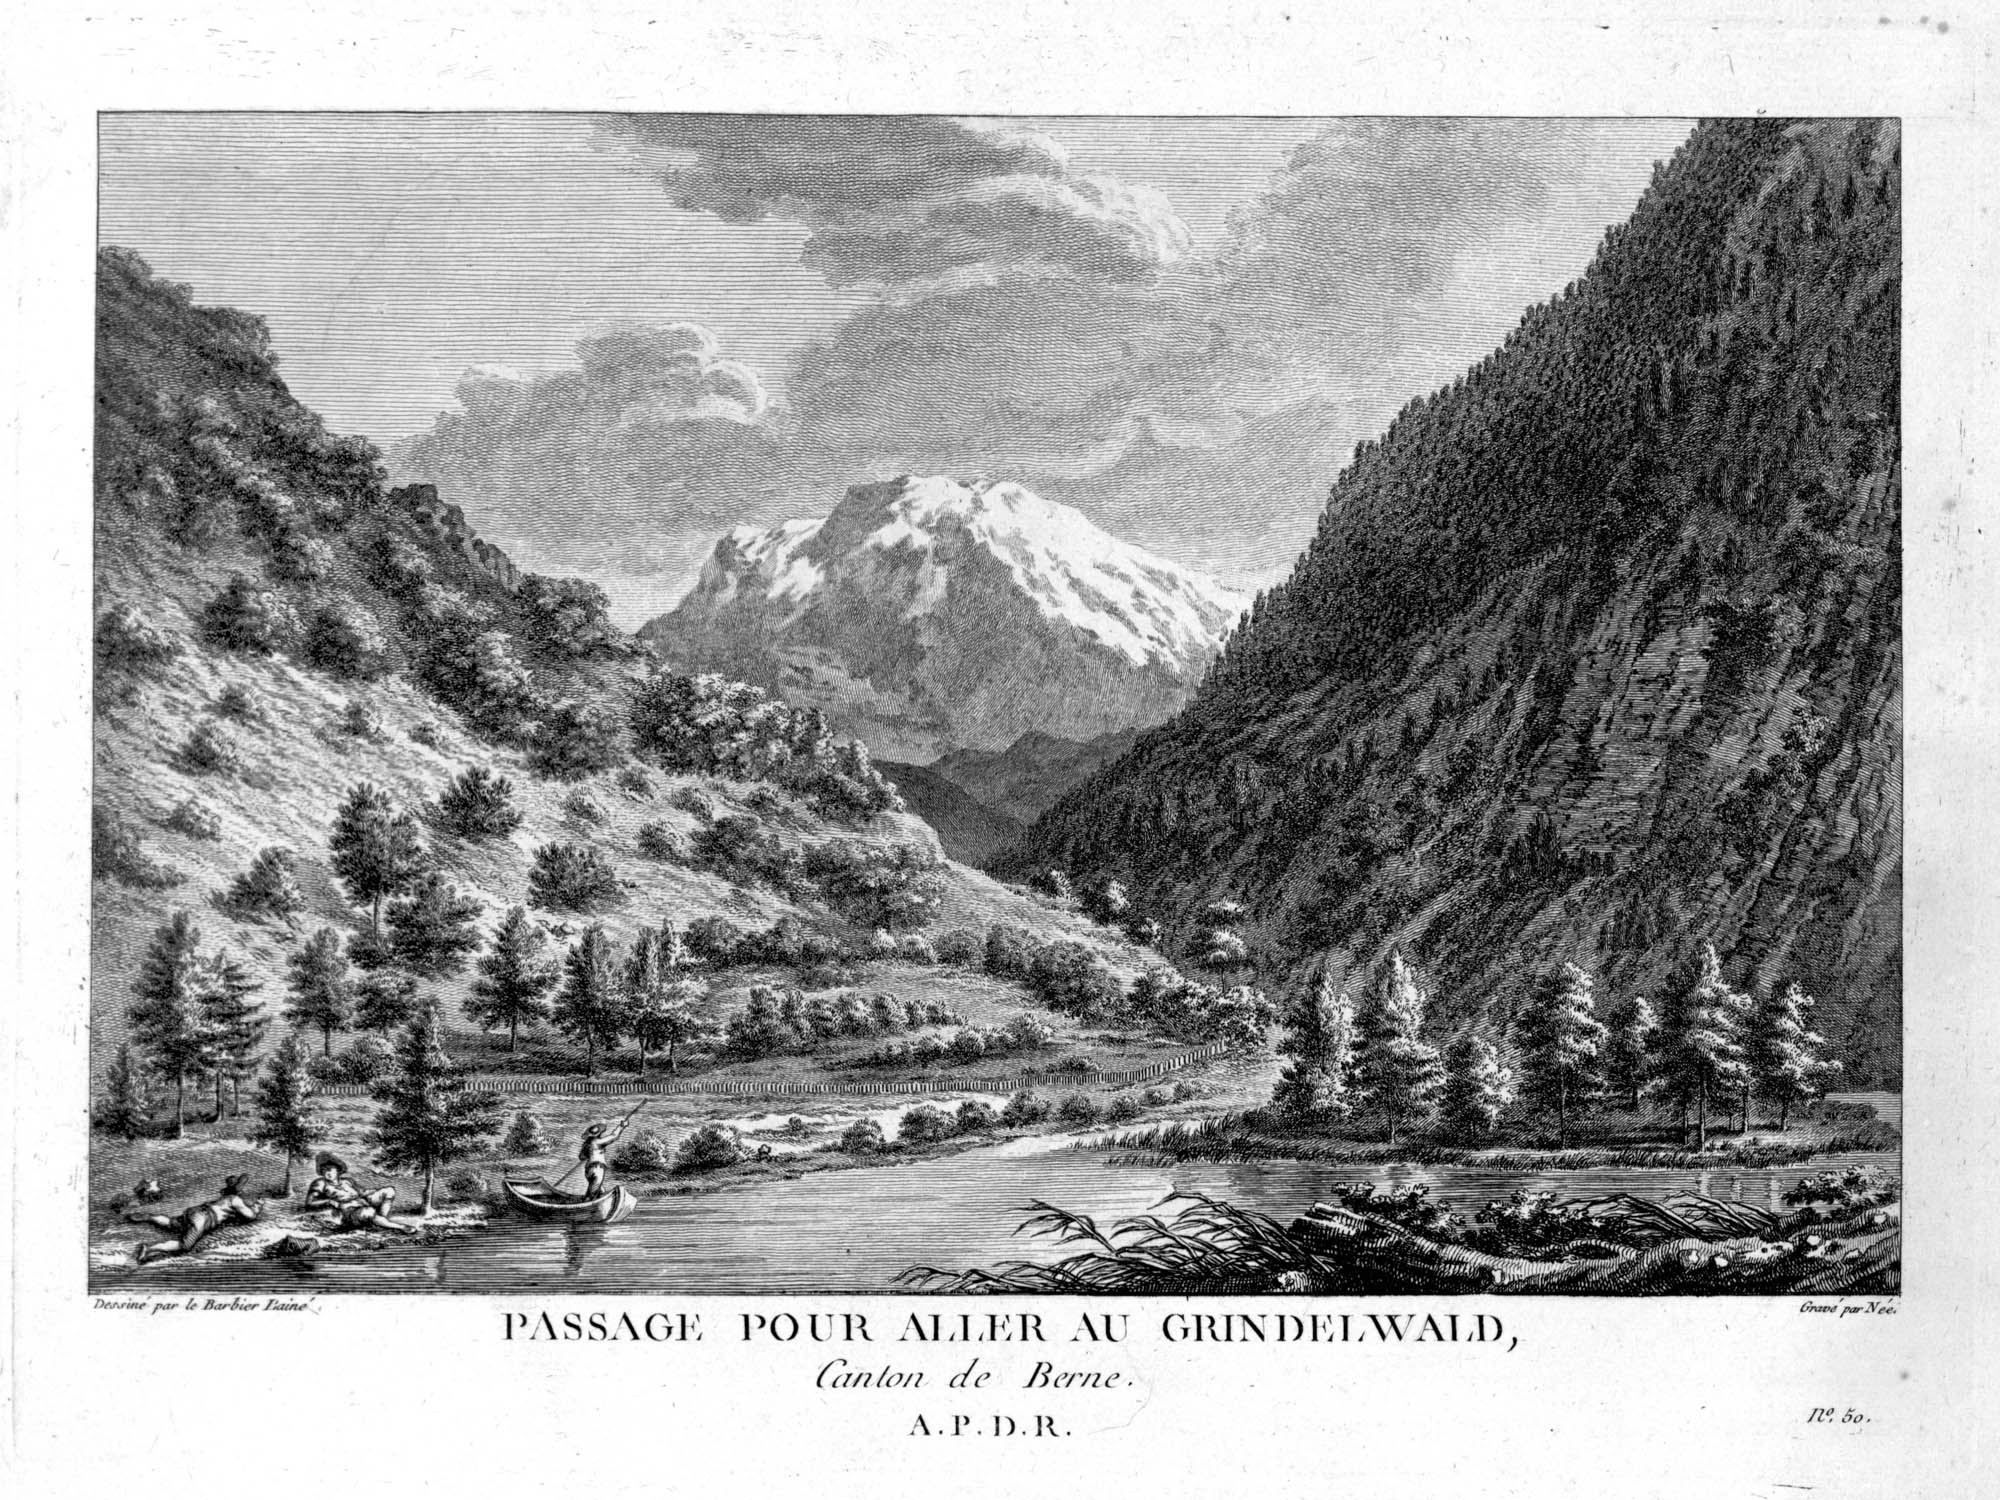 Passage pour aller au Grindelwald, Canton de Berne